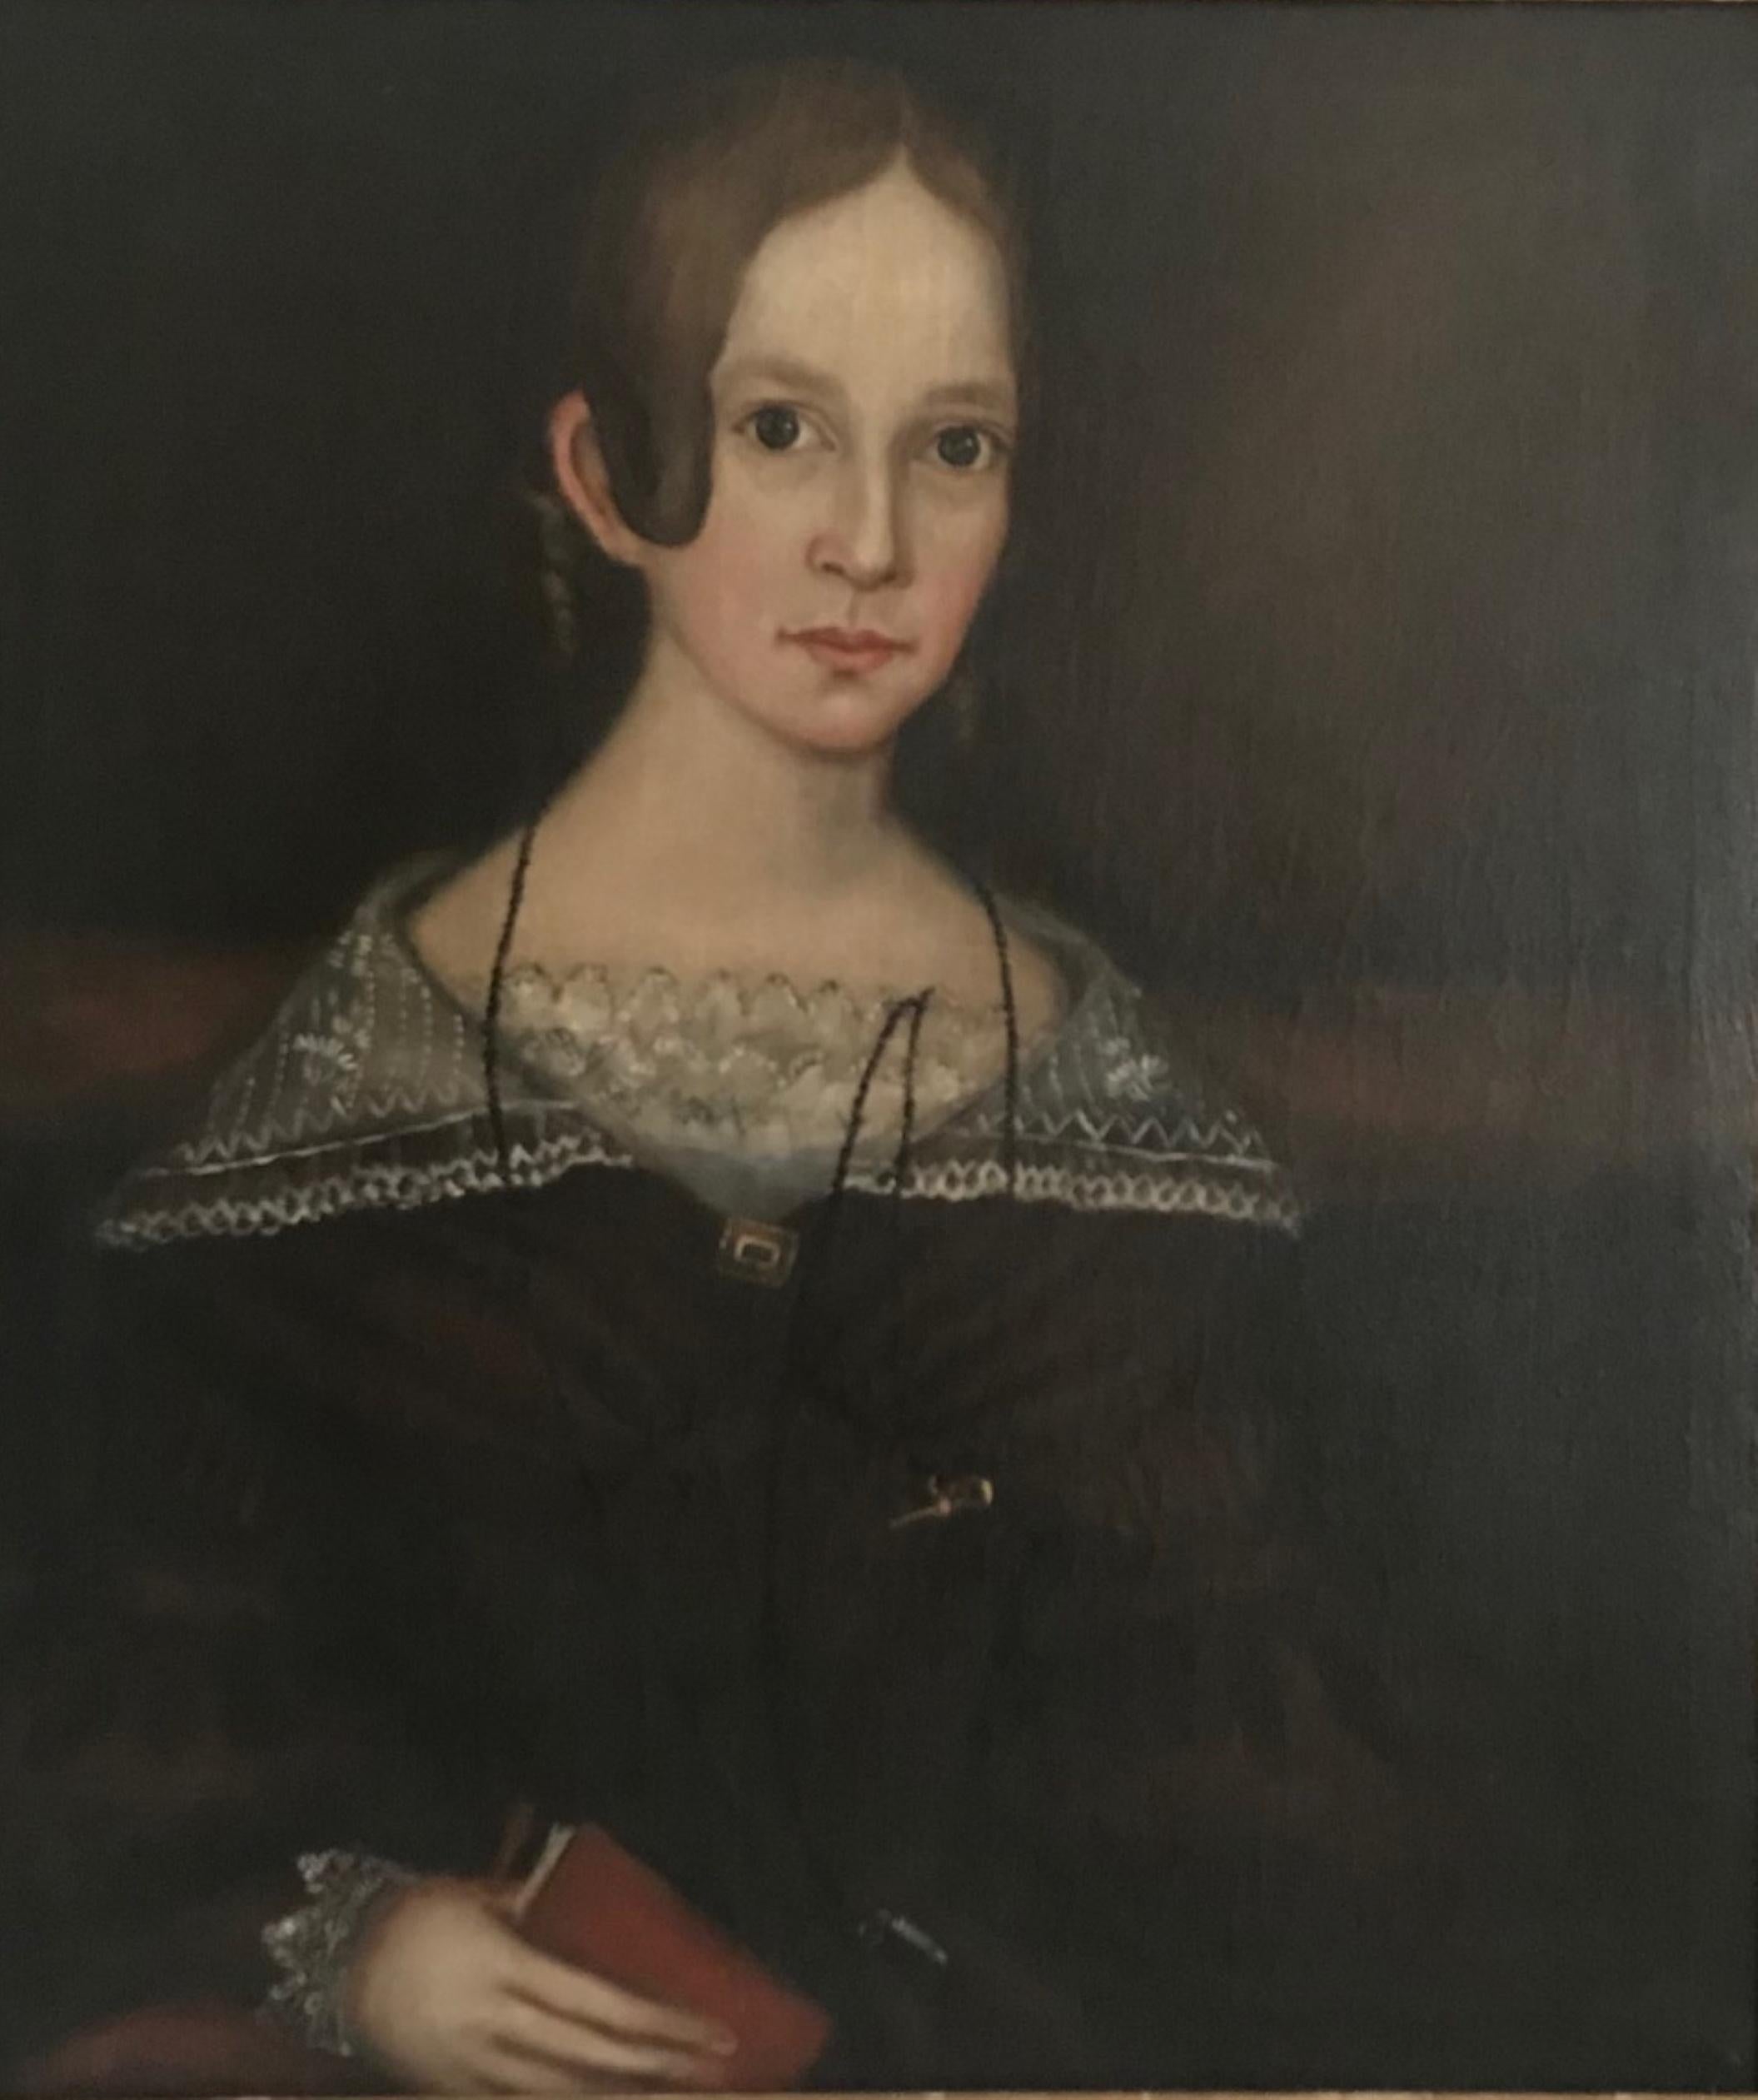 Superbe peinture d'art populaire américain Ammi Phillips Portrait, vers 1840

Nous sommes fiers de notre acquisition de ce chef-d'œuvre authentique d'Ammi Phillips (1788-1865).
Le portrait finement rendu dépeint une jeune fille séduisante avec une